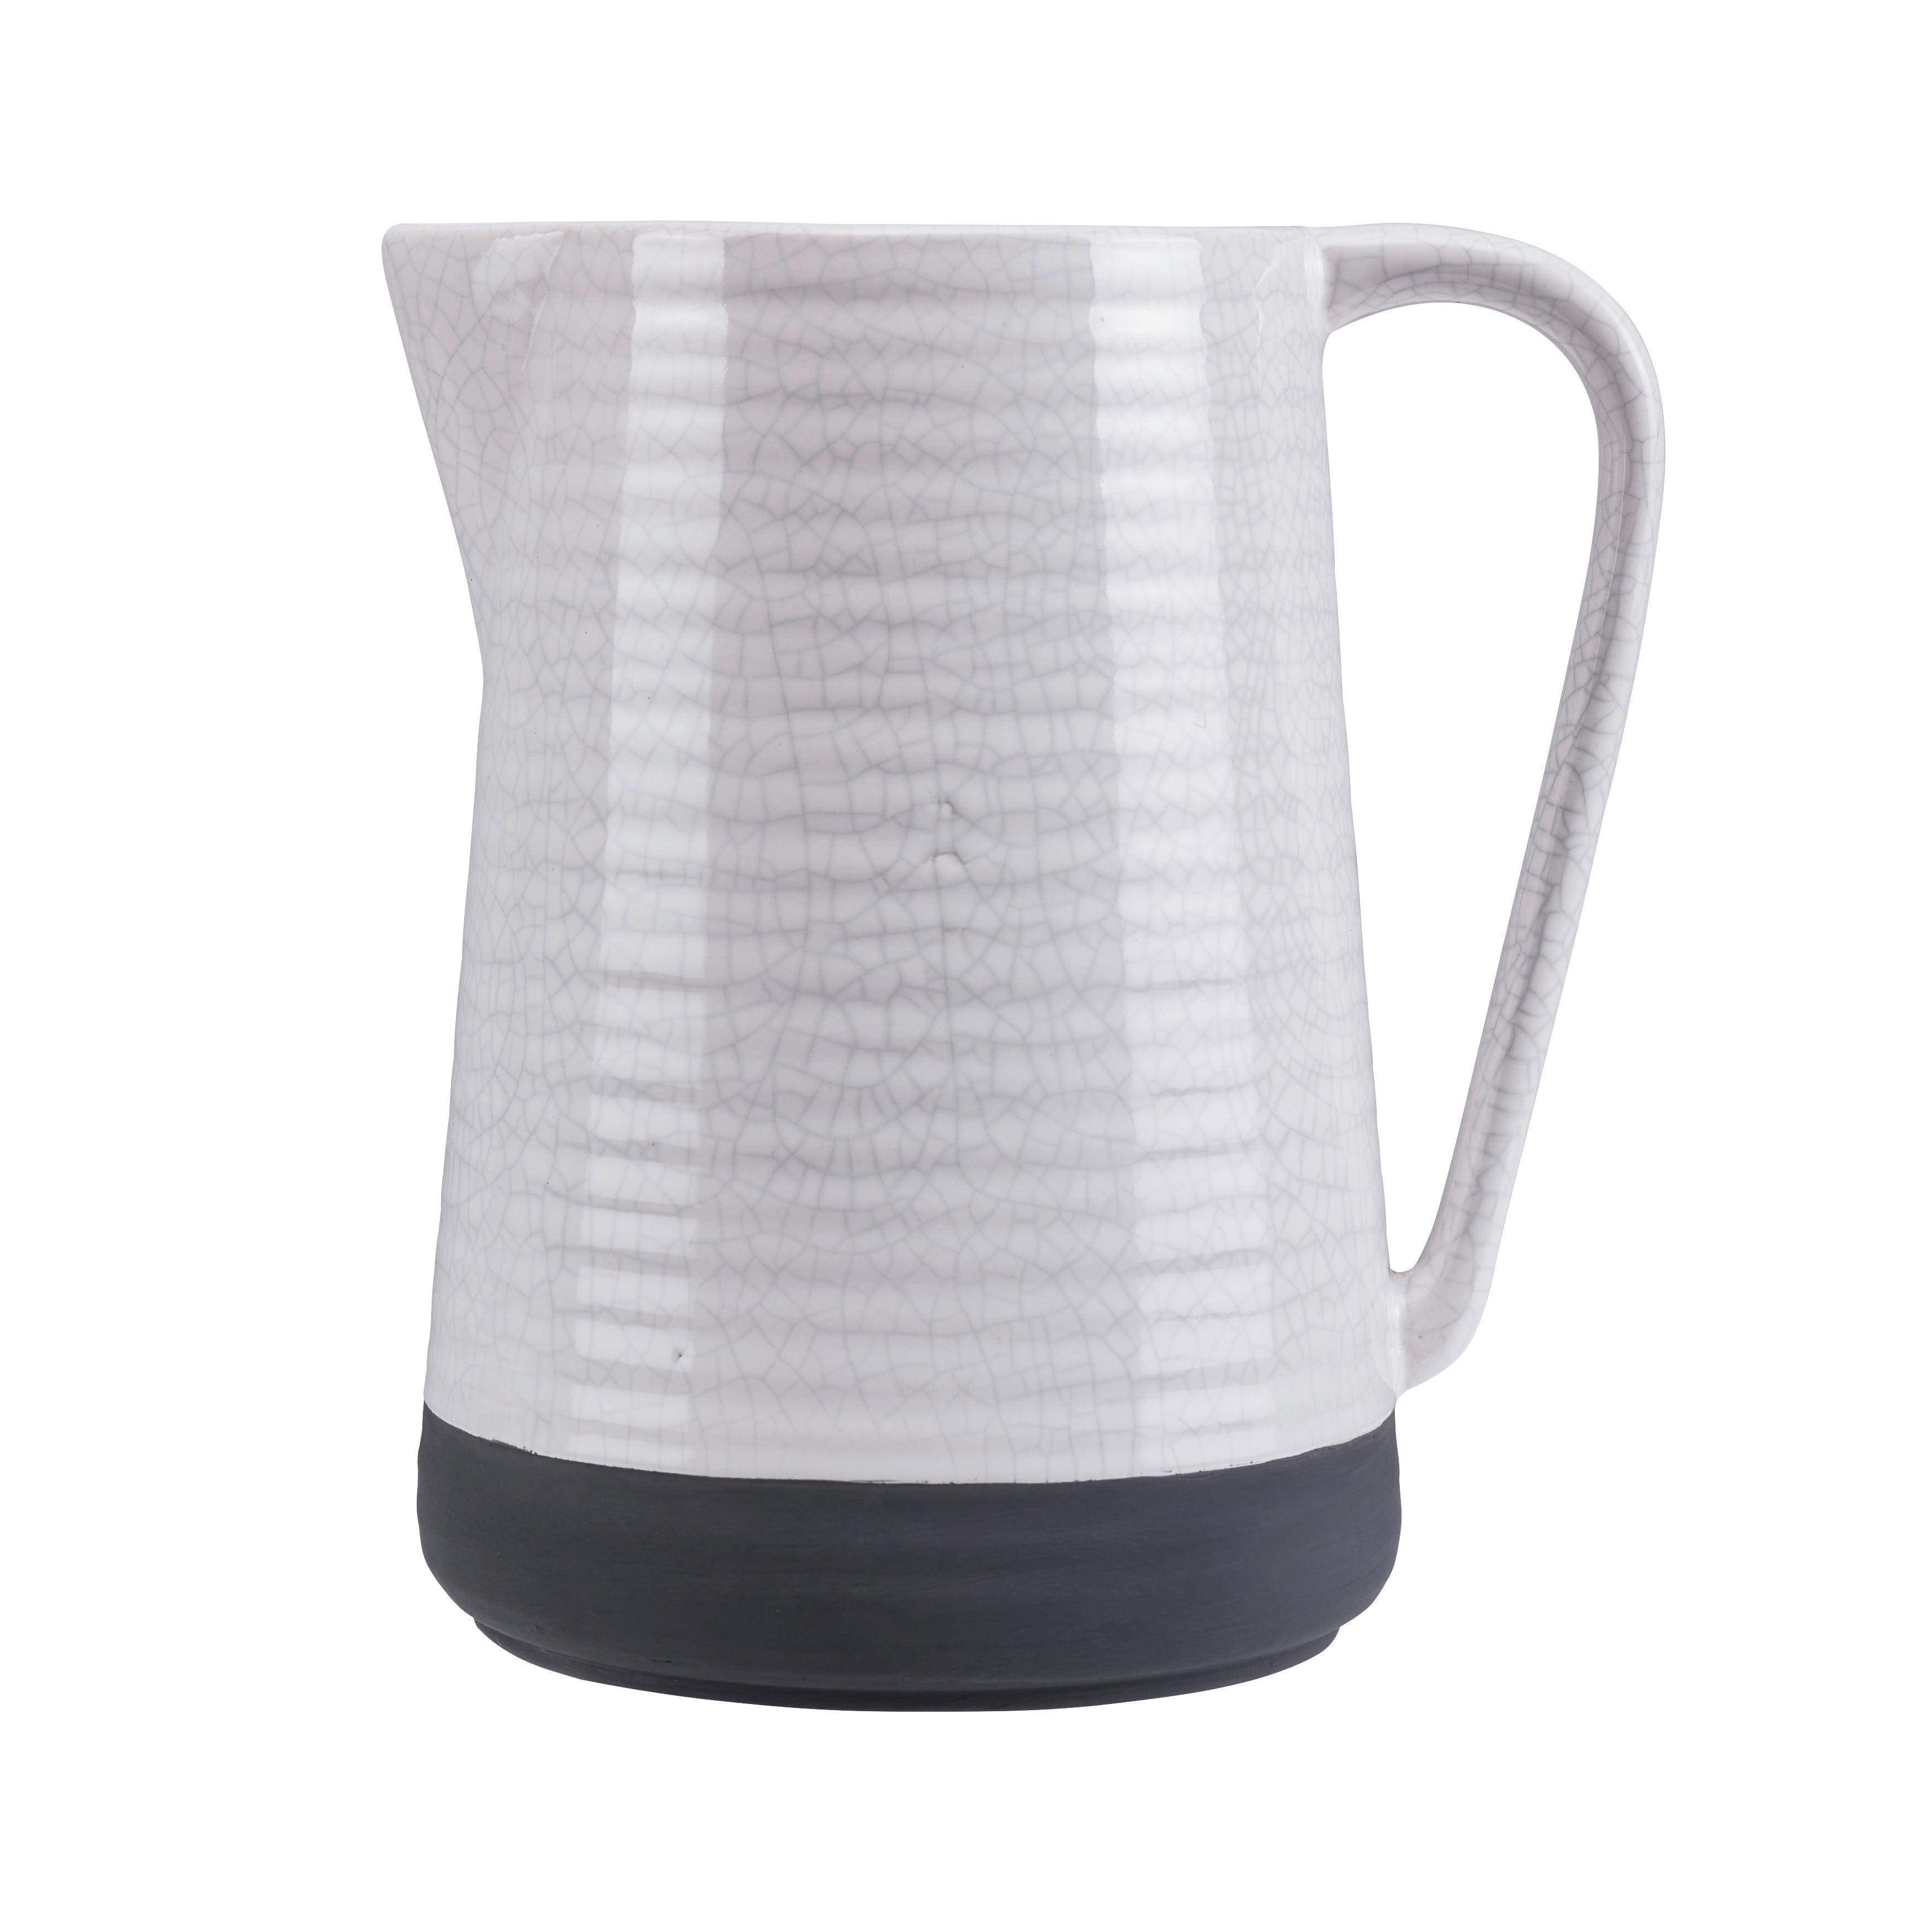 Vase Rezzo aus Steinzeug - Weiß/Grau, MODERN, Keramik (19,2/21,5cm) - Bessagi Home